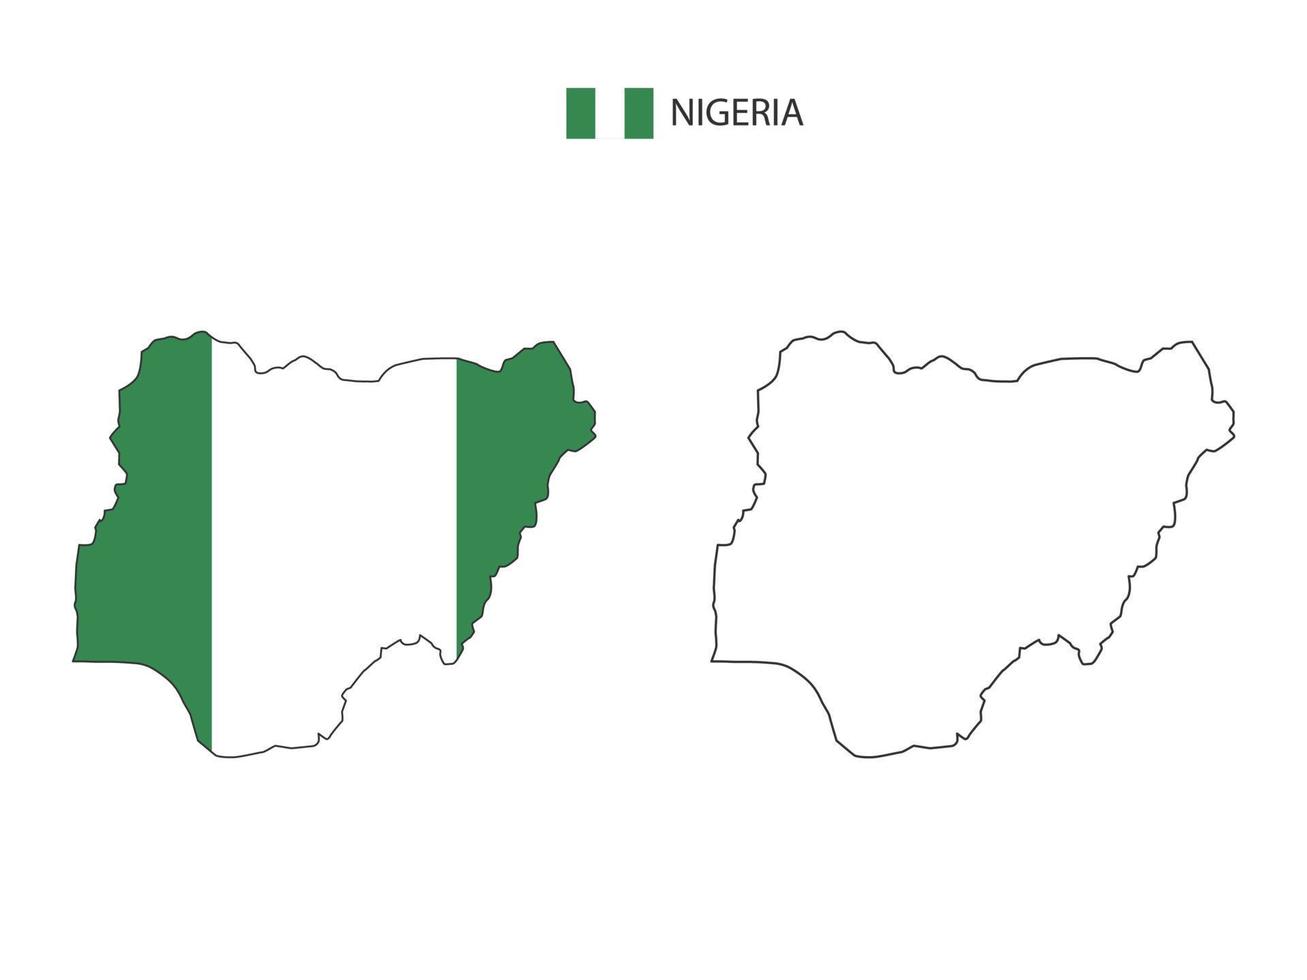 Nigeria-Karte Stadtvektor geteilt durch Umriss-Einfachheitsstil. haben 2 Versionen, eine schwarze Version mit dünner Linie und eine Version in der Farbe der Landesflagge. beide Karten waren auf dem weißen Hintergrund. vektor